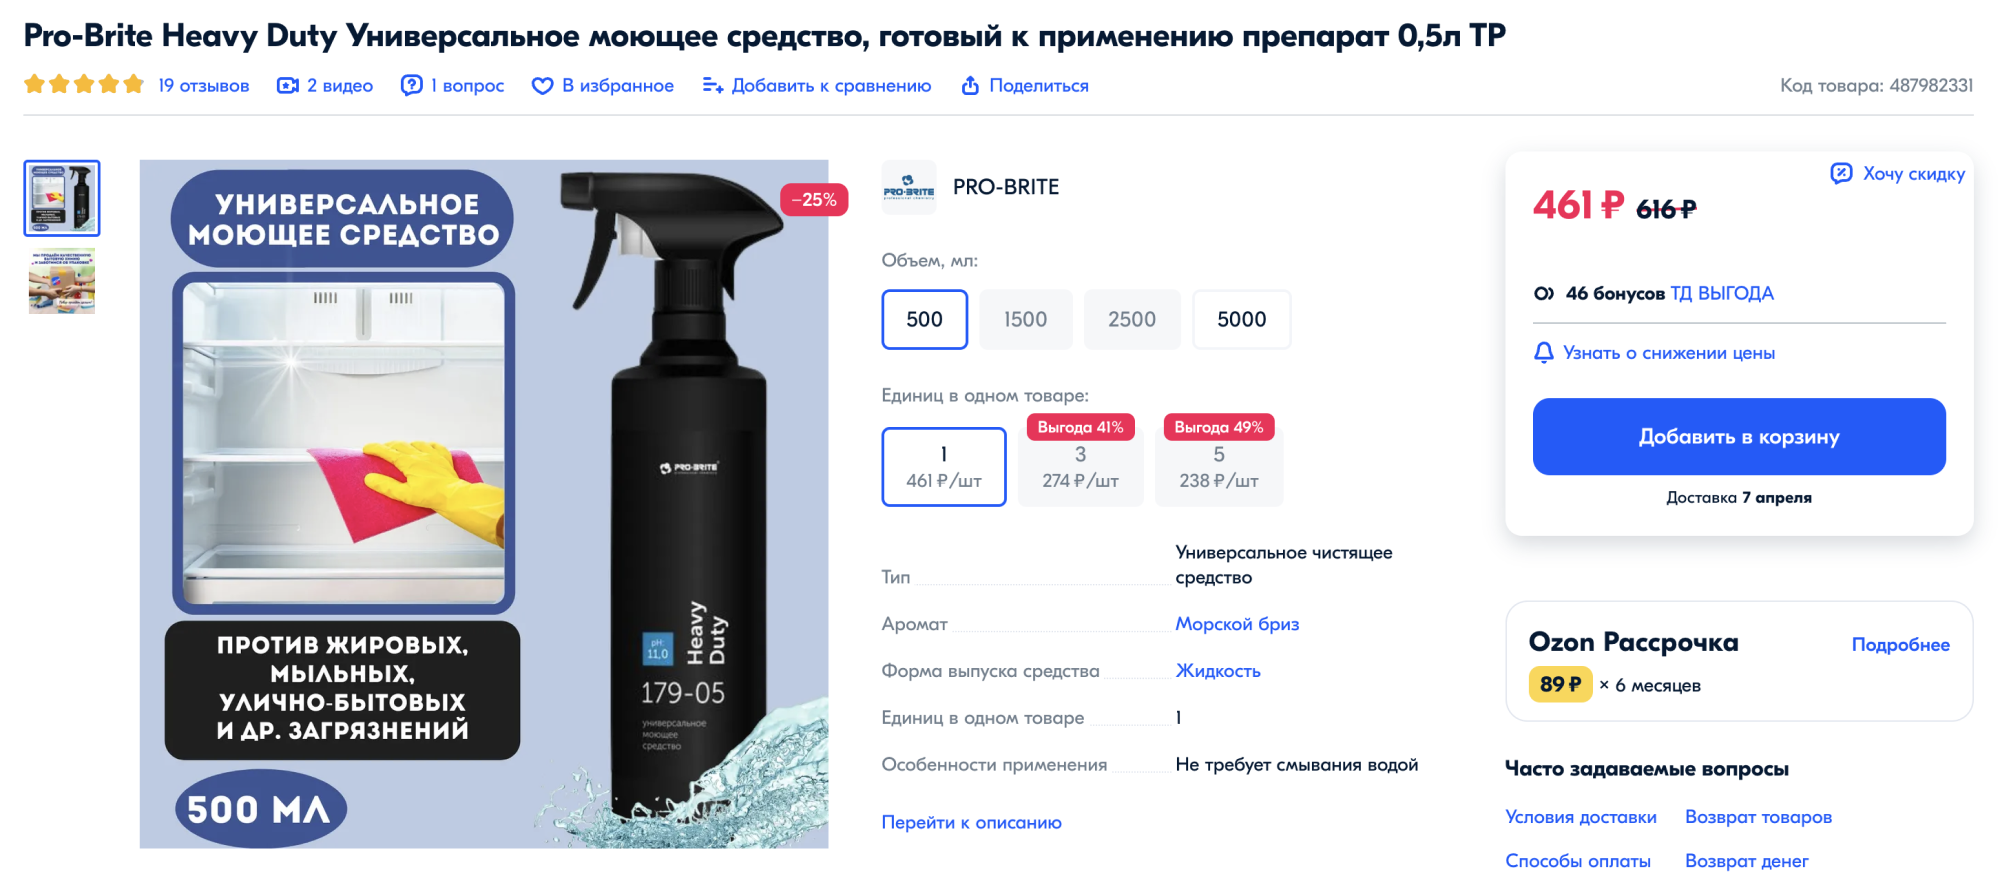 Как помыть холодильник No Frost (Ноу Фрост) — журнал LG MAGAZINE Россия | LG MAGAZINE